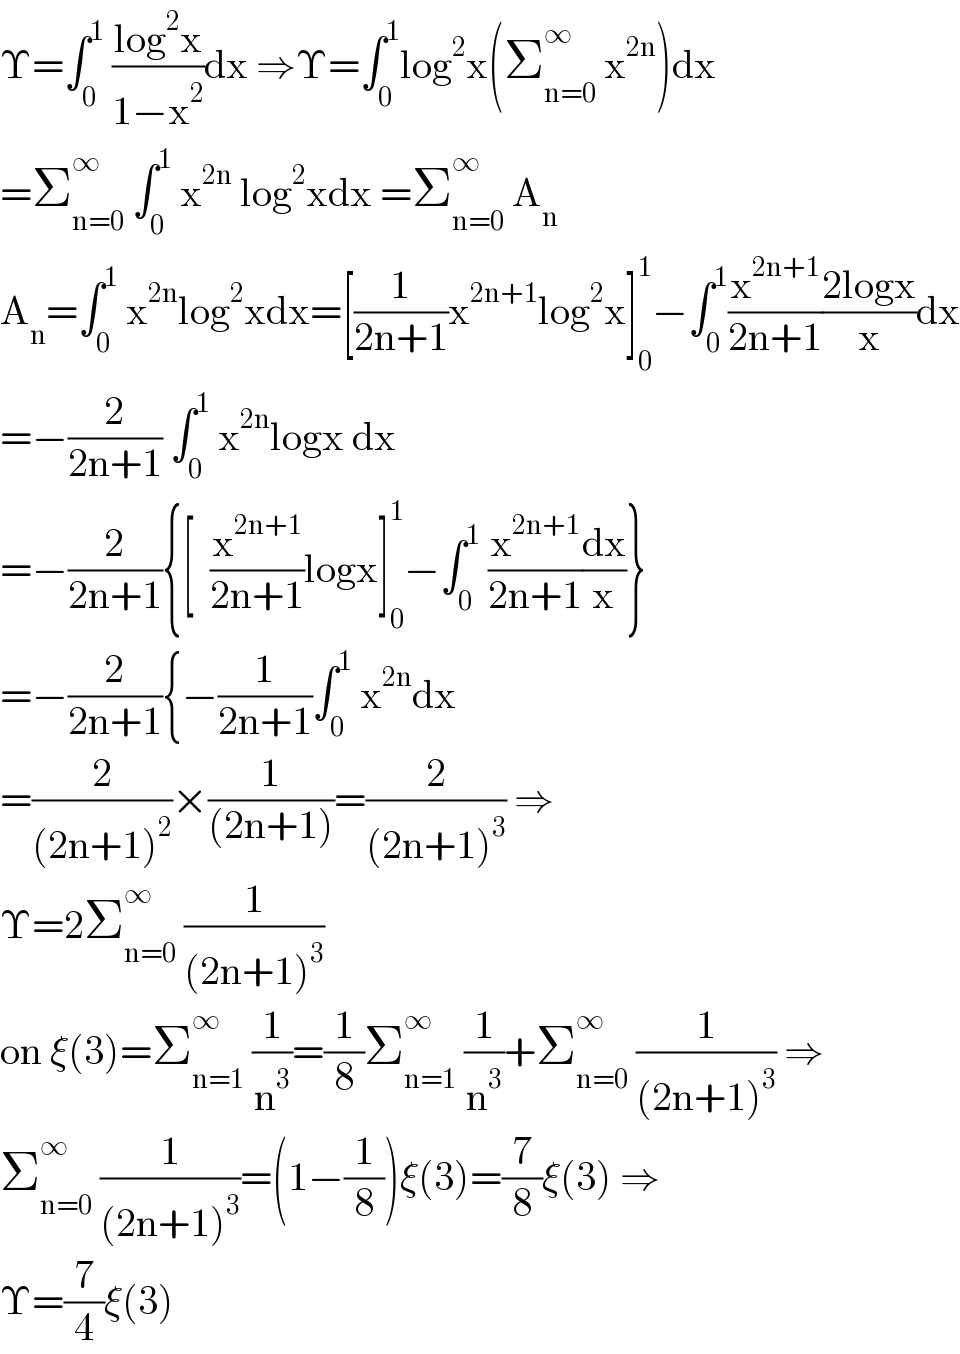 Υ=∫_0 ^1  ((log^2 x)/(1−x^2 ))dx ⇒Υ=∫_0 ^1 log^2 x(Σ_(n=0) ^∞  x^(2n) )dx  =Σ_(n=0) ^∞  ∫_0 ^1  x^(2n)  log^2 xdx =Σ_(n=0) ^∞  A_n   A_n =∫_0 ^1  x^(2n) log^2 xdx=[(1/(2n+1))x^(2n+1) log^2 x]_0 ^1 −∫_0 ^1 (x^(2n+1) /(2n+1))((2logx)/x)dx  =−(2/(2n+1)) ∫_0 ^1  x^(2n) logx dx  =−(2/(2n+1)){[  (x^(2n+1) /(2n+1))logx]_0 ^1 −∫_0 ^1  (x^(2n+1) /(2n+1))(dx/x)}  =−(2/(2n+1)){−(1/(2n+1))∫_0 ^1  x^(2n) dx  =(2/((2n+1)^2 ))×(1/((2n+1)))=(2/((2n+1)^3 )) ⇒  Υ=2Σ_(n=0) ^∞  (1/((2n+1)^3 ))  on ξ(3)=Σ_(n=1) ^∞  (1/n^3 )=(1/8)Σ_(n=1) ^∞  (1/n^3 )+Σ_(n=0) ^∞  (1/((2n+1)^3 )) ⇒  Σ_(n=0) ^∞  (1/((2n+1)^3 ))=(1−(1/8))ξ(3)=(7/8)ξ(3) ⇒  Υ=(7/4)ξ(3)  